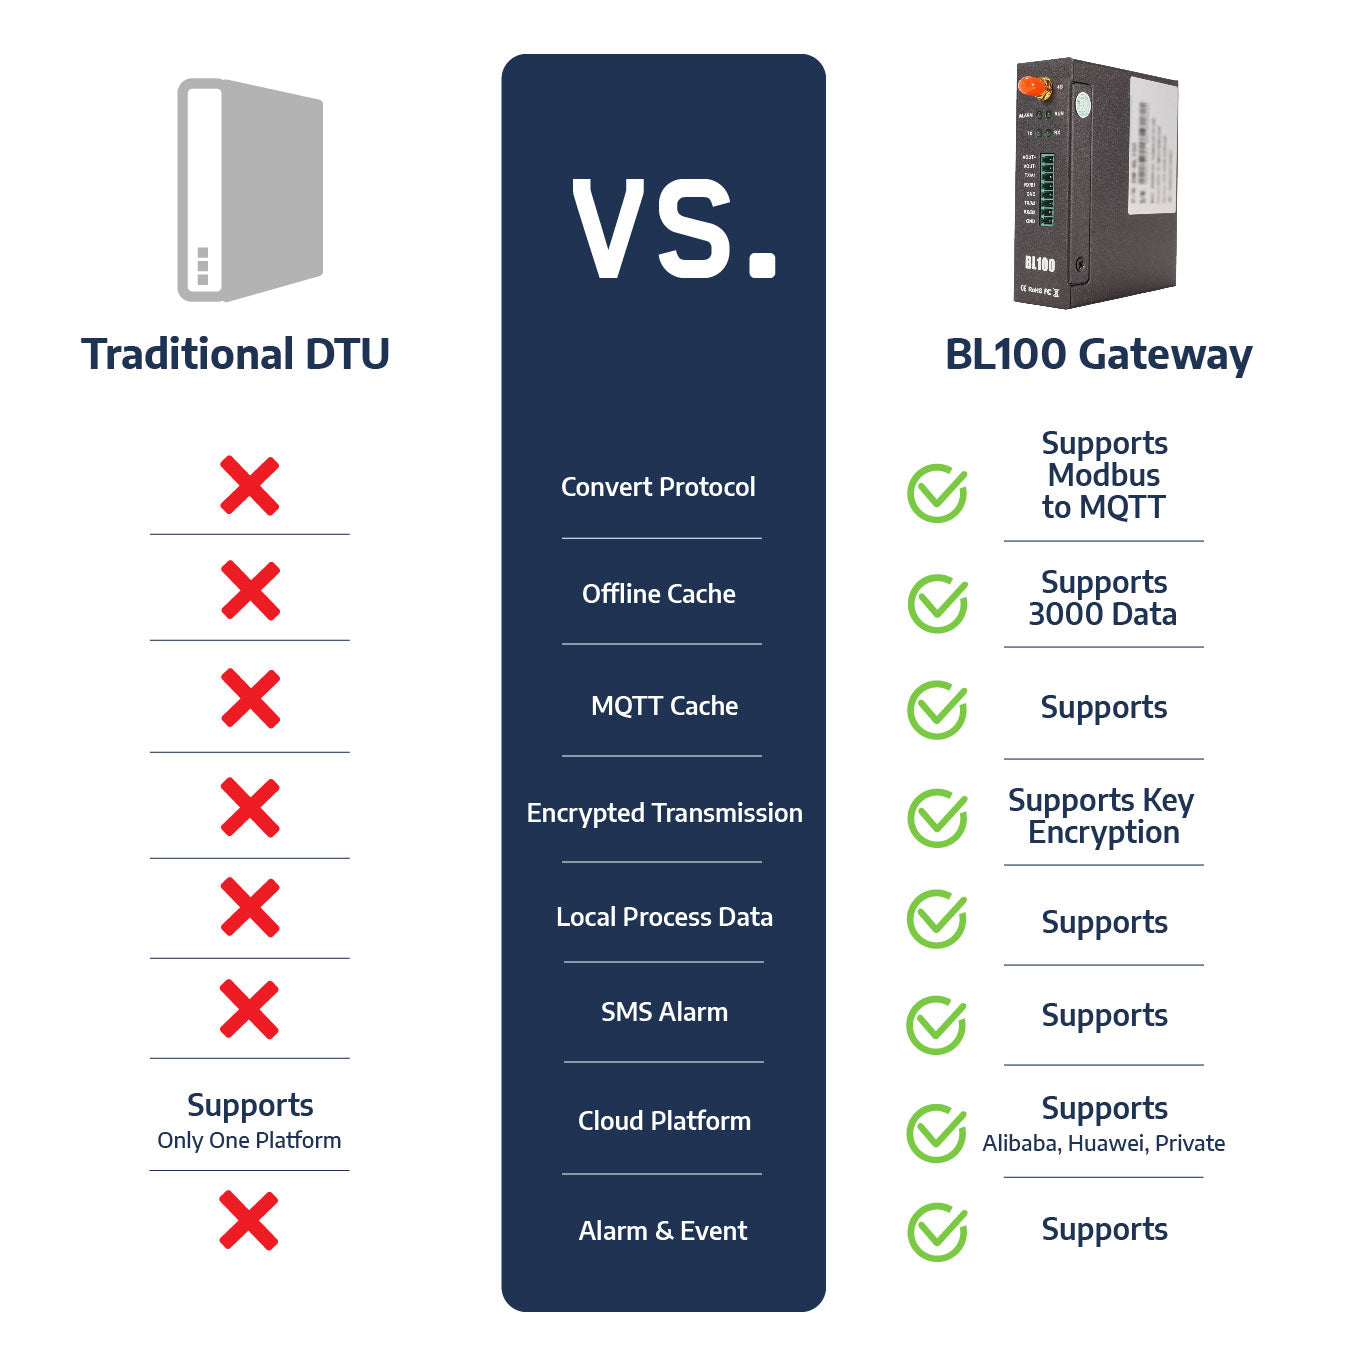 BL100 MQTT LTE Gateway - IOT USA